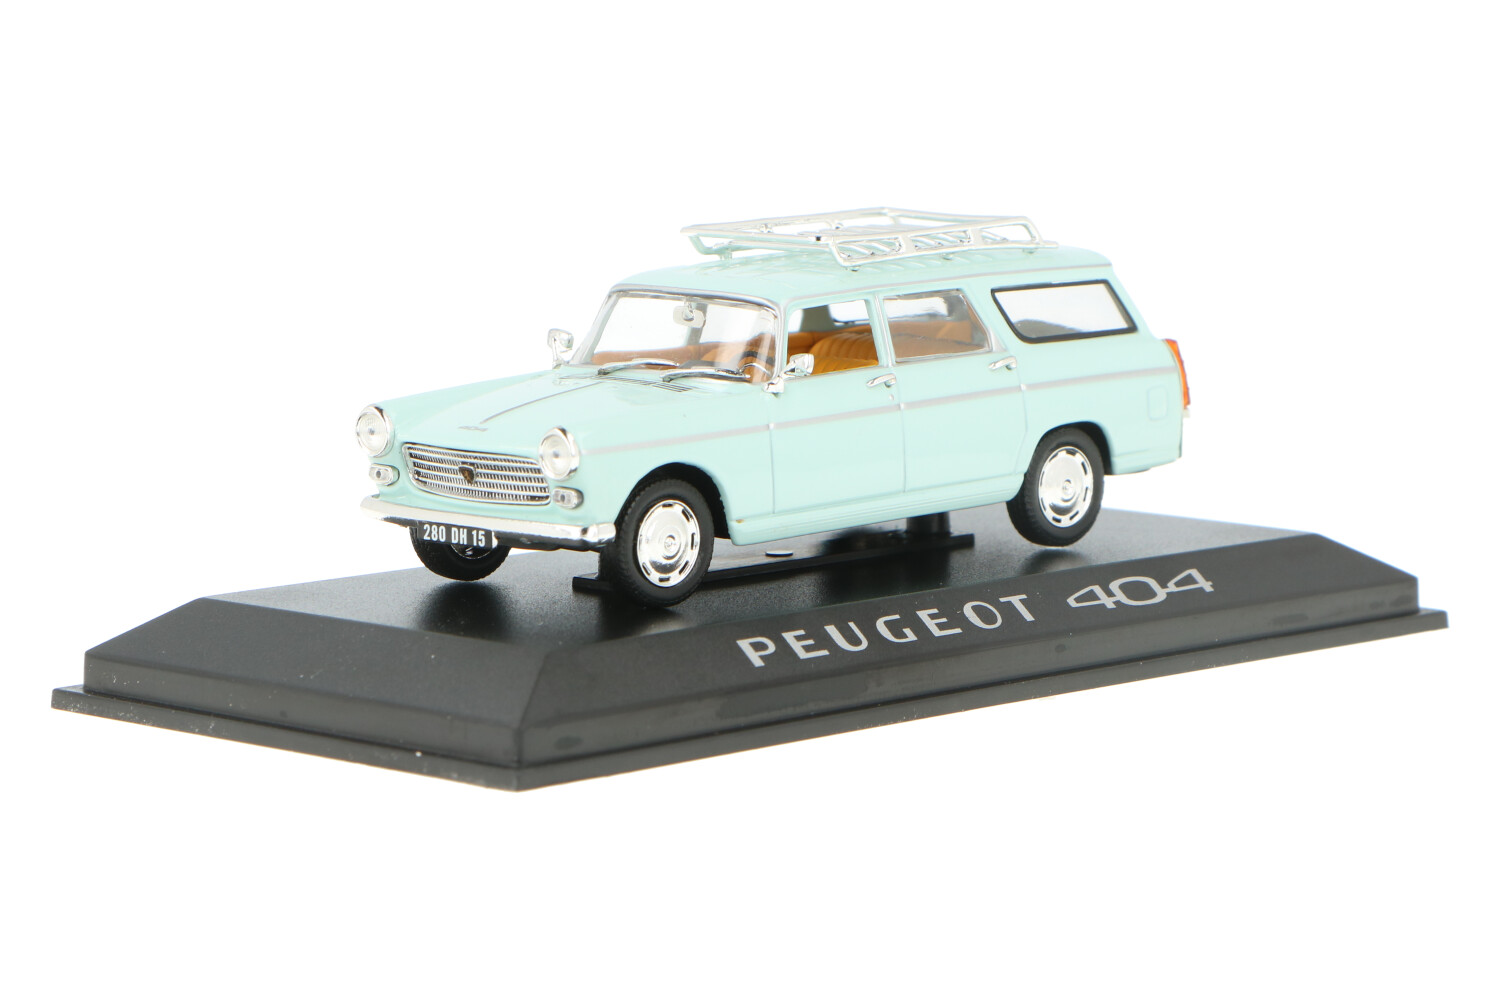 Peugeot-404-474416_13153551094744167Peugeot-404-474416_Houseofmodelcars_.jpg